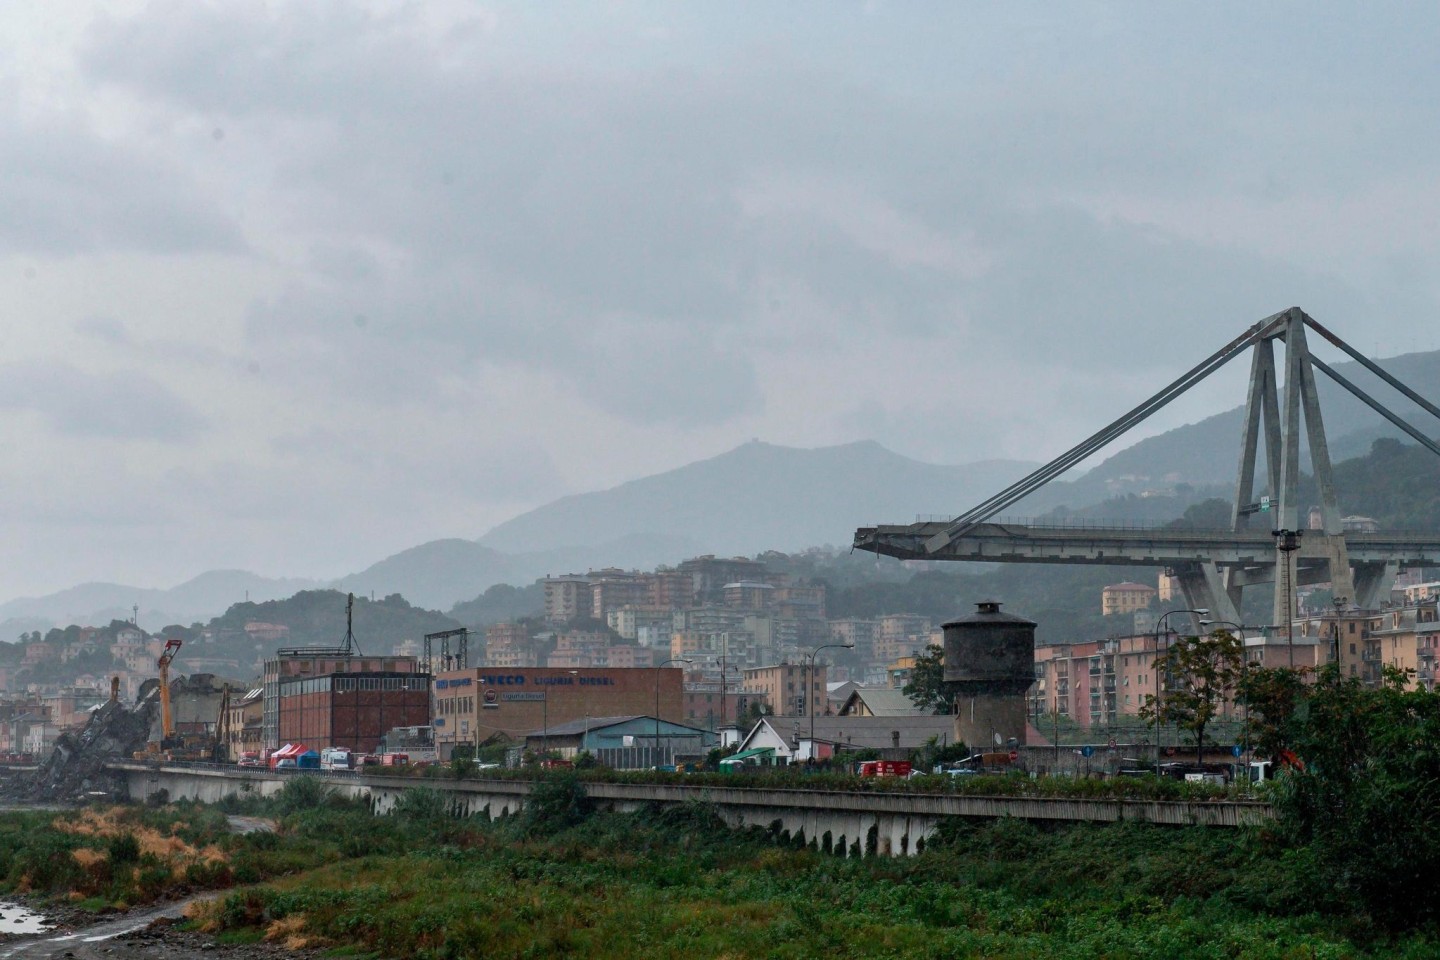 Ein Blick auf die eingestürzte Morandi Autobahnbrücke in Genua. 43 Menschen kamen bei dem Unglück am 14. August 2018 ums Leben.